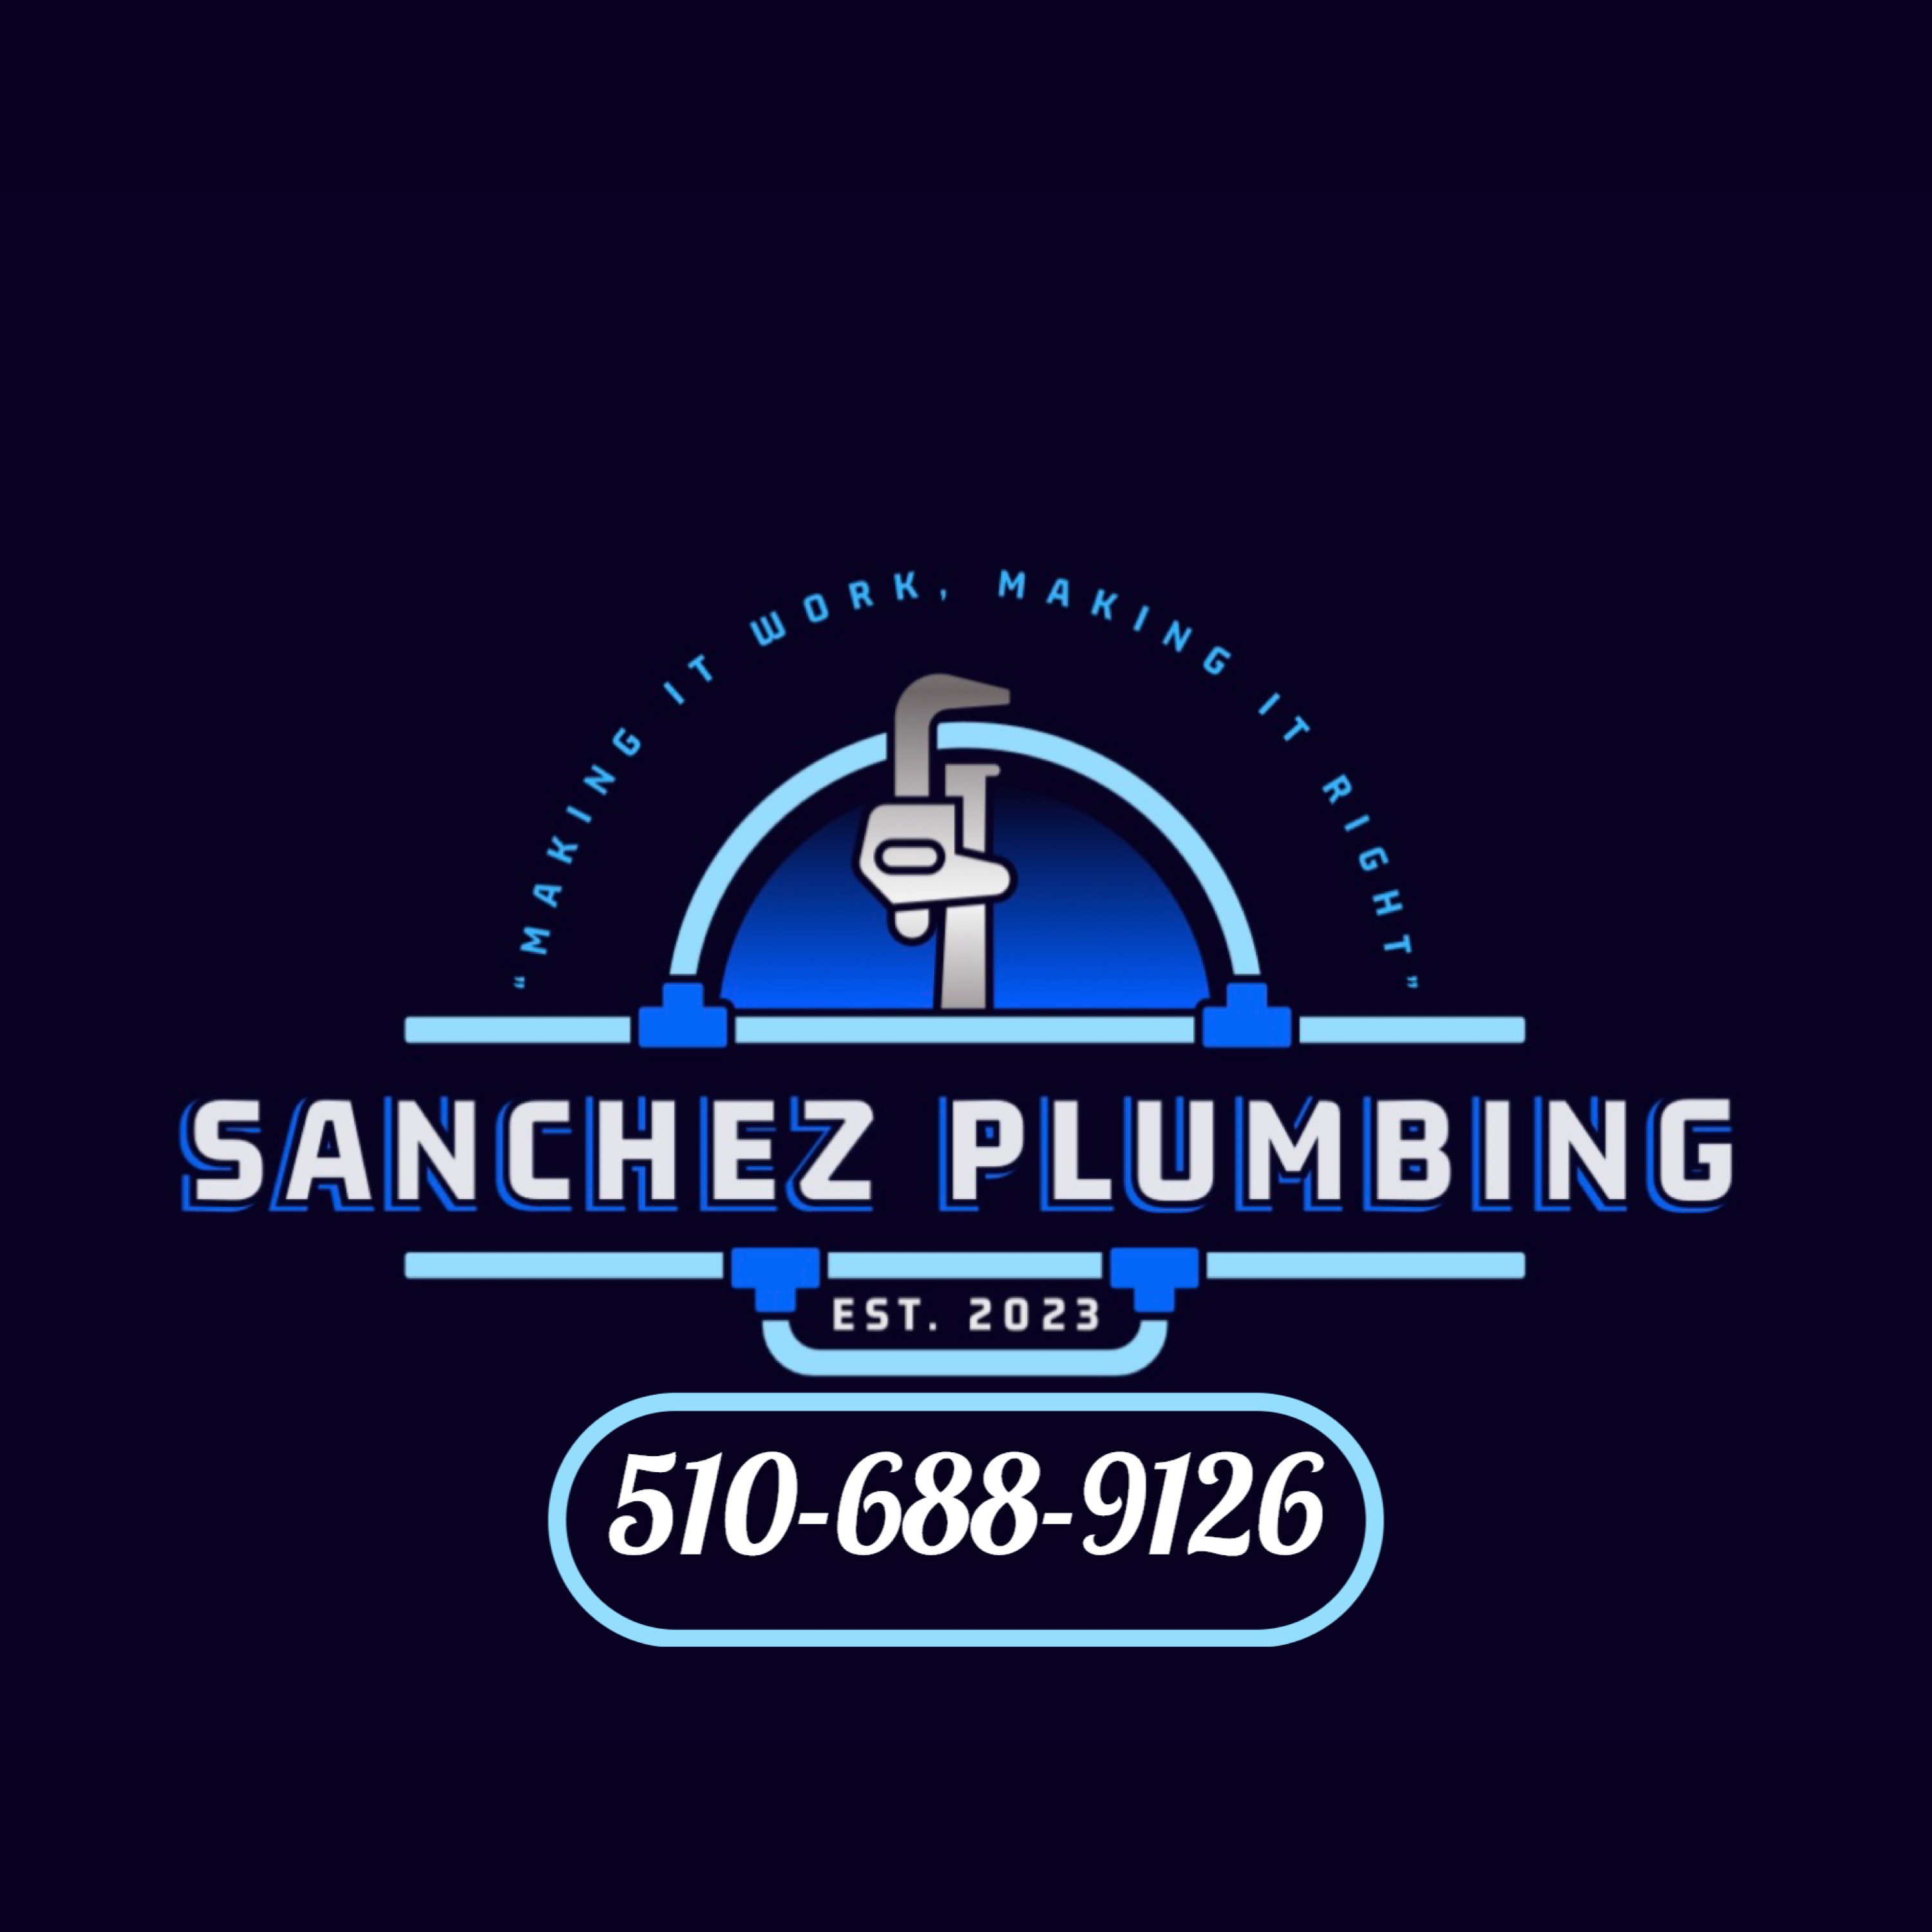 Sanchez Plumbing - Unlicensed Contractor Logo